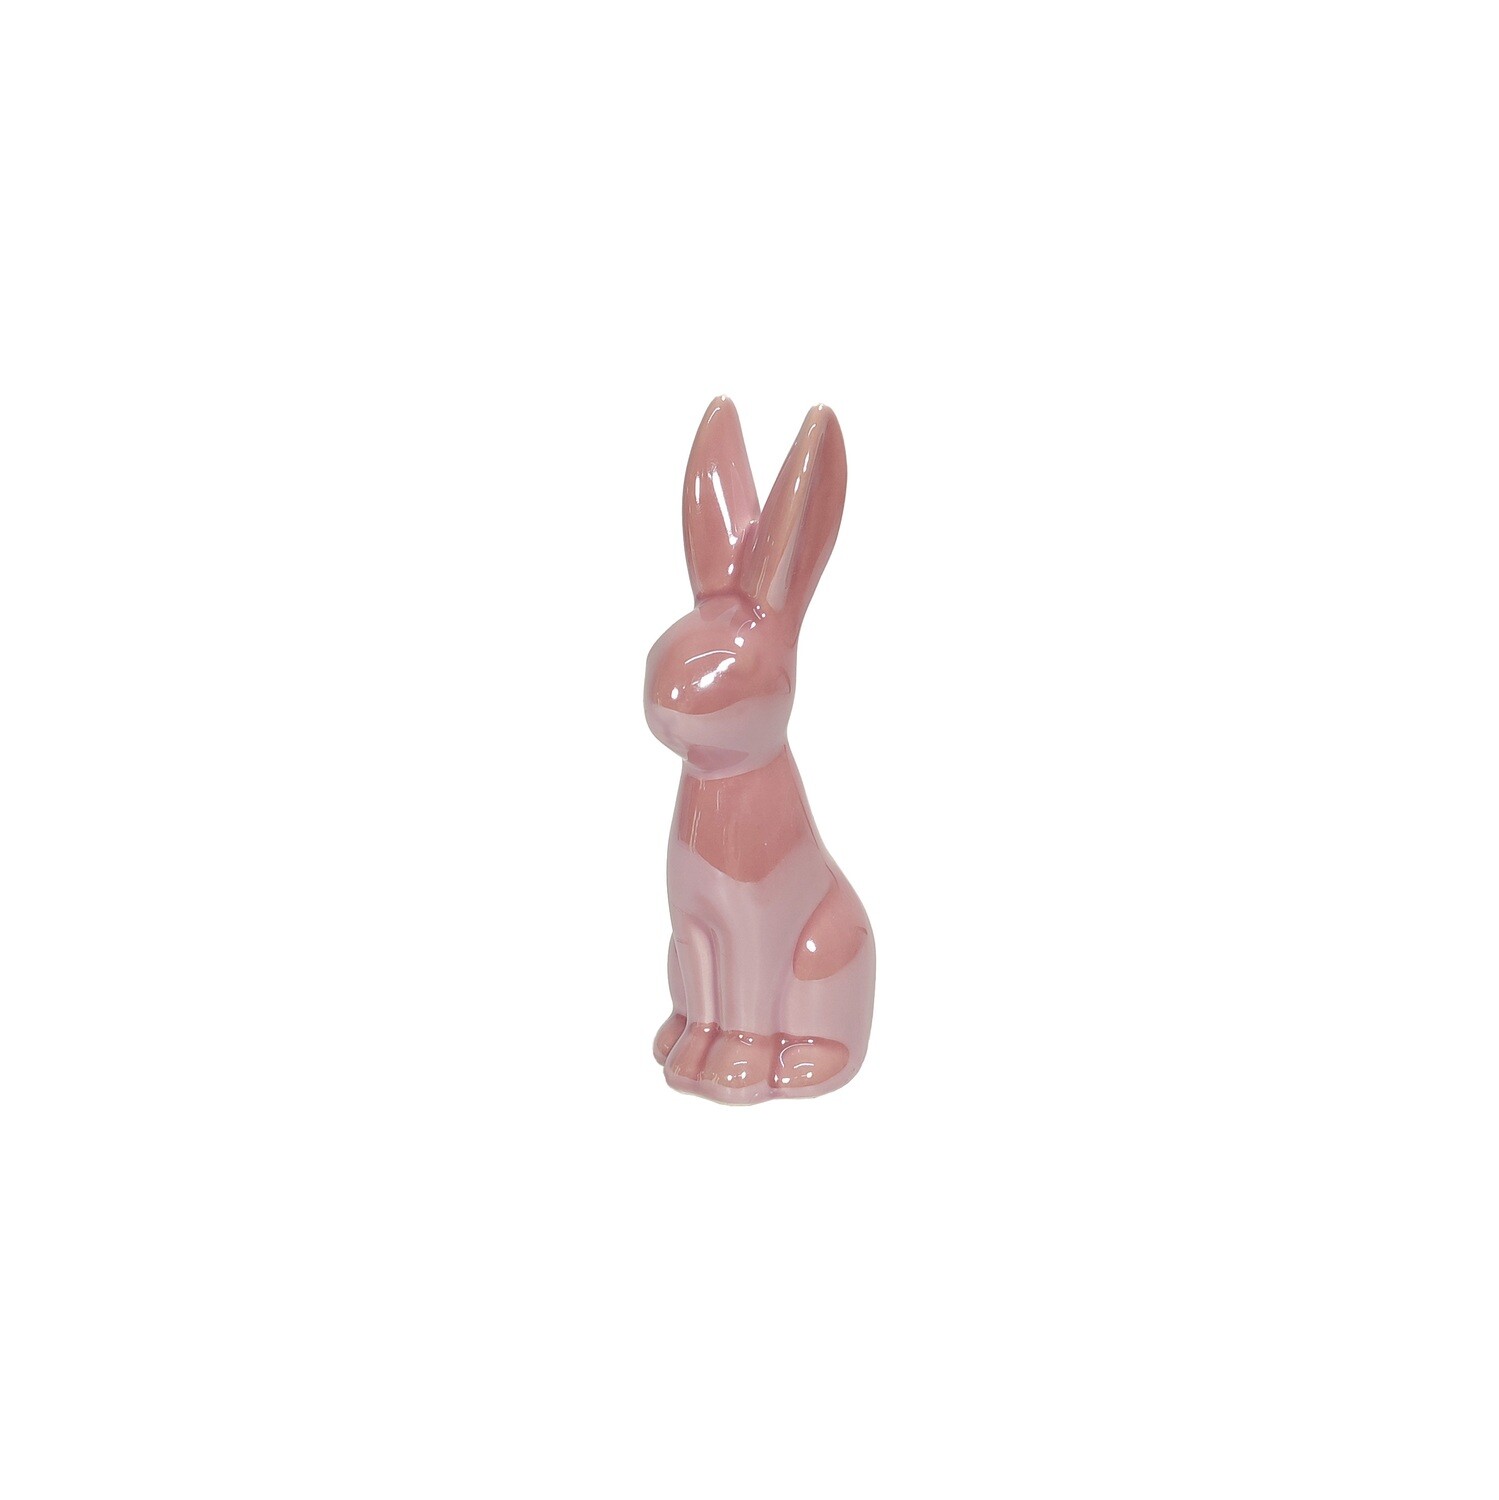 Ceramic Rabbit with pearl finish 13cm